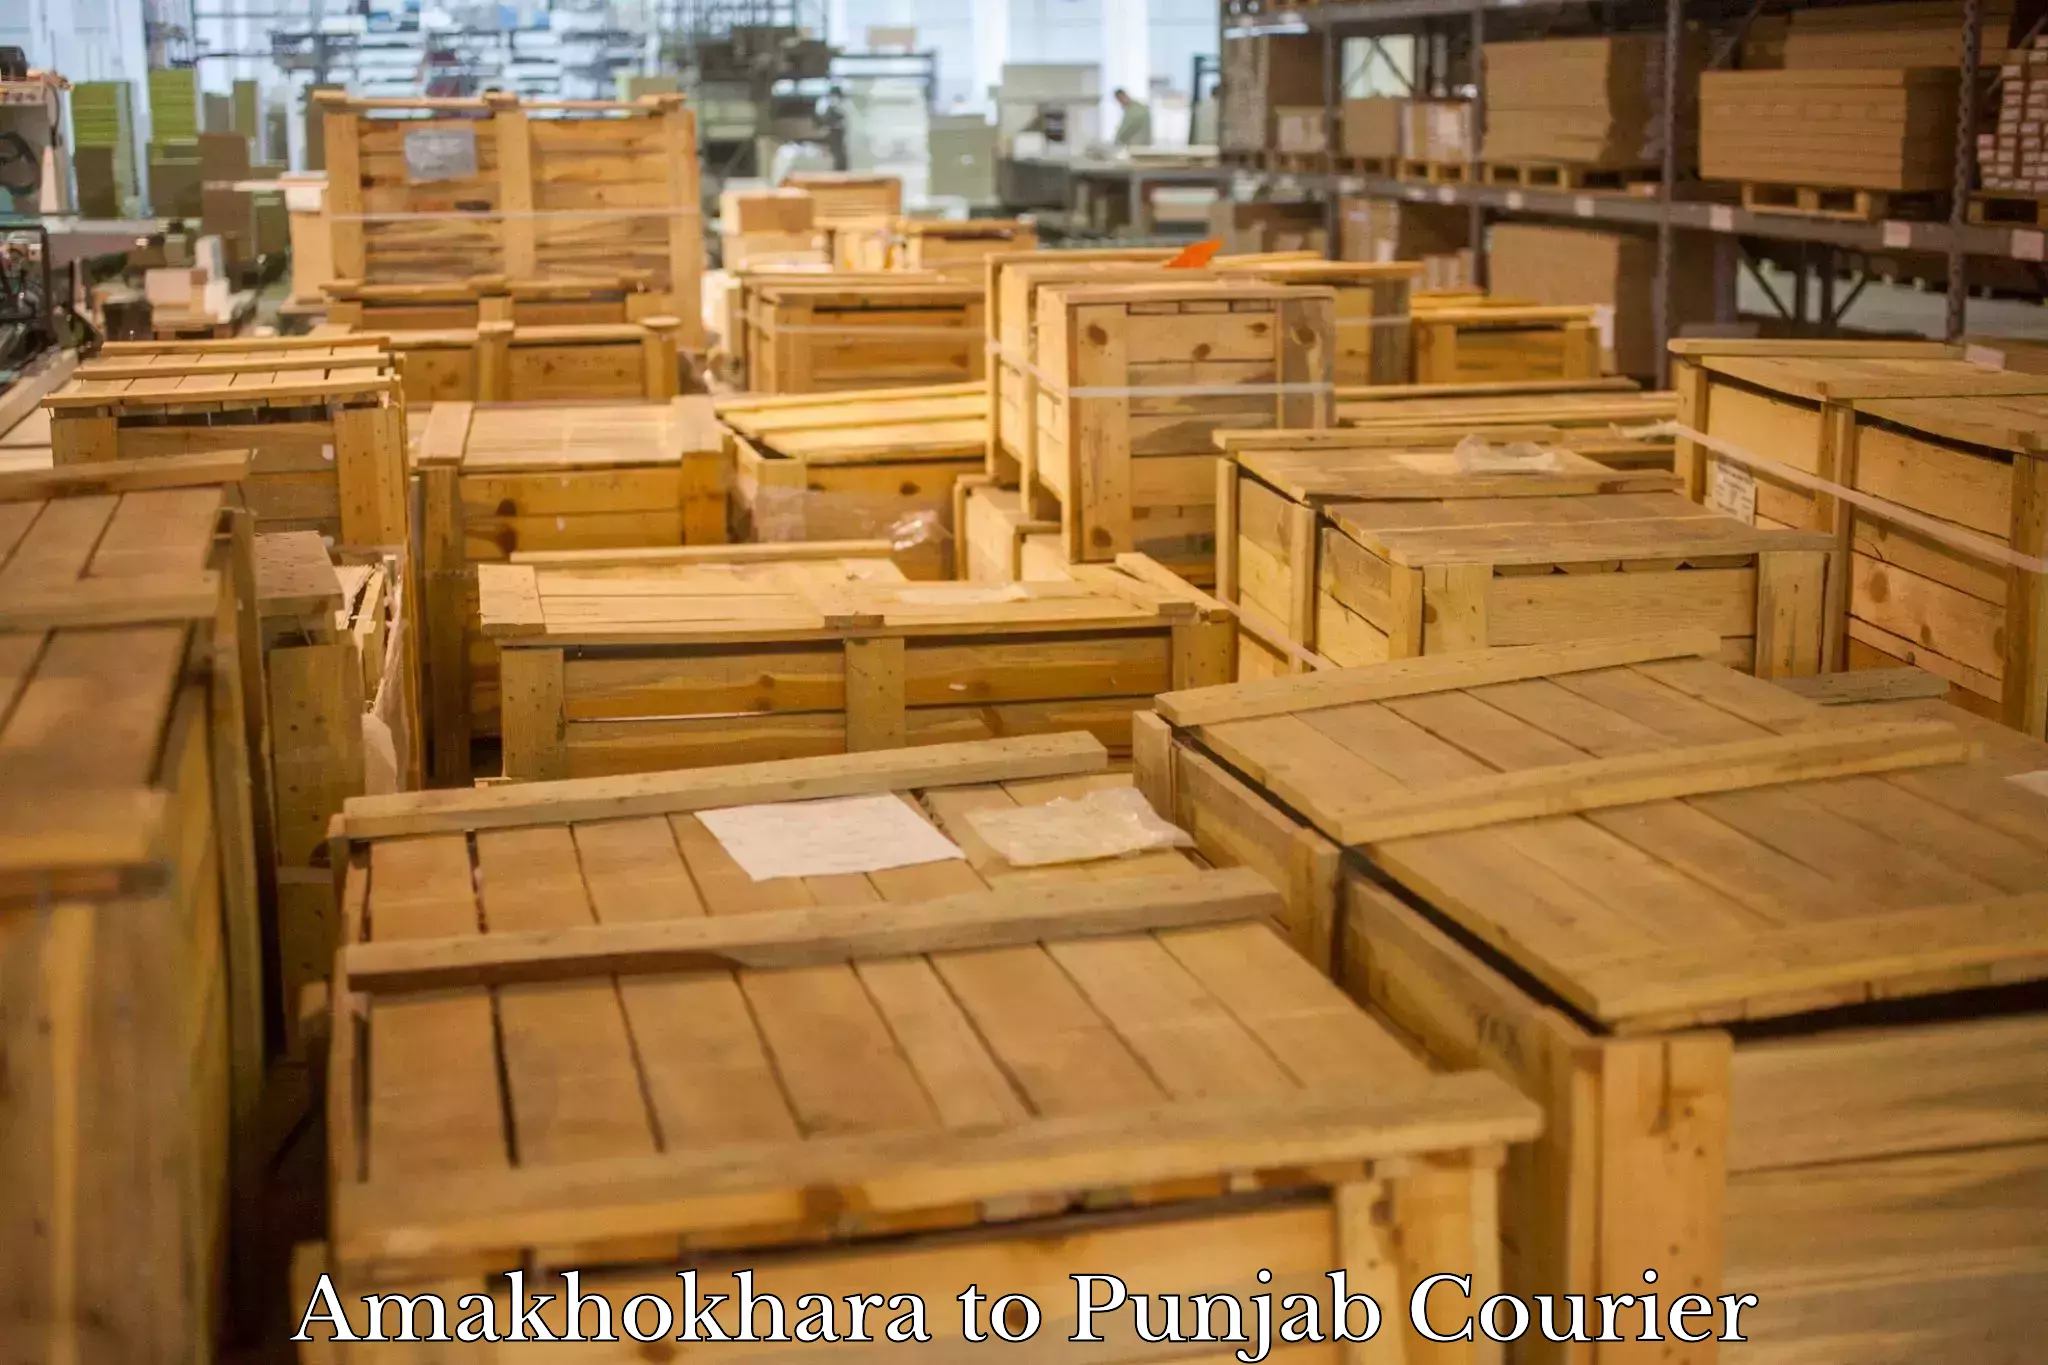 On-demand shipping options Amakhokhara to Rampura Phul